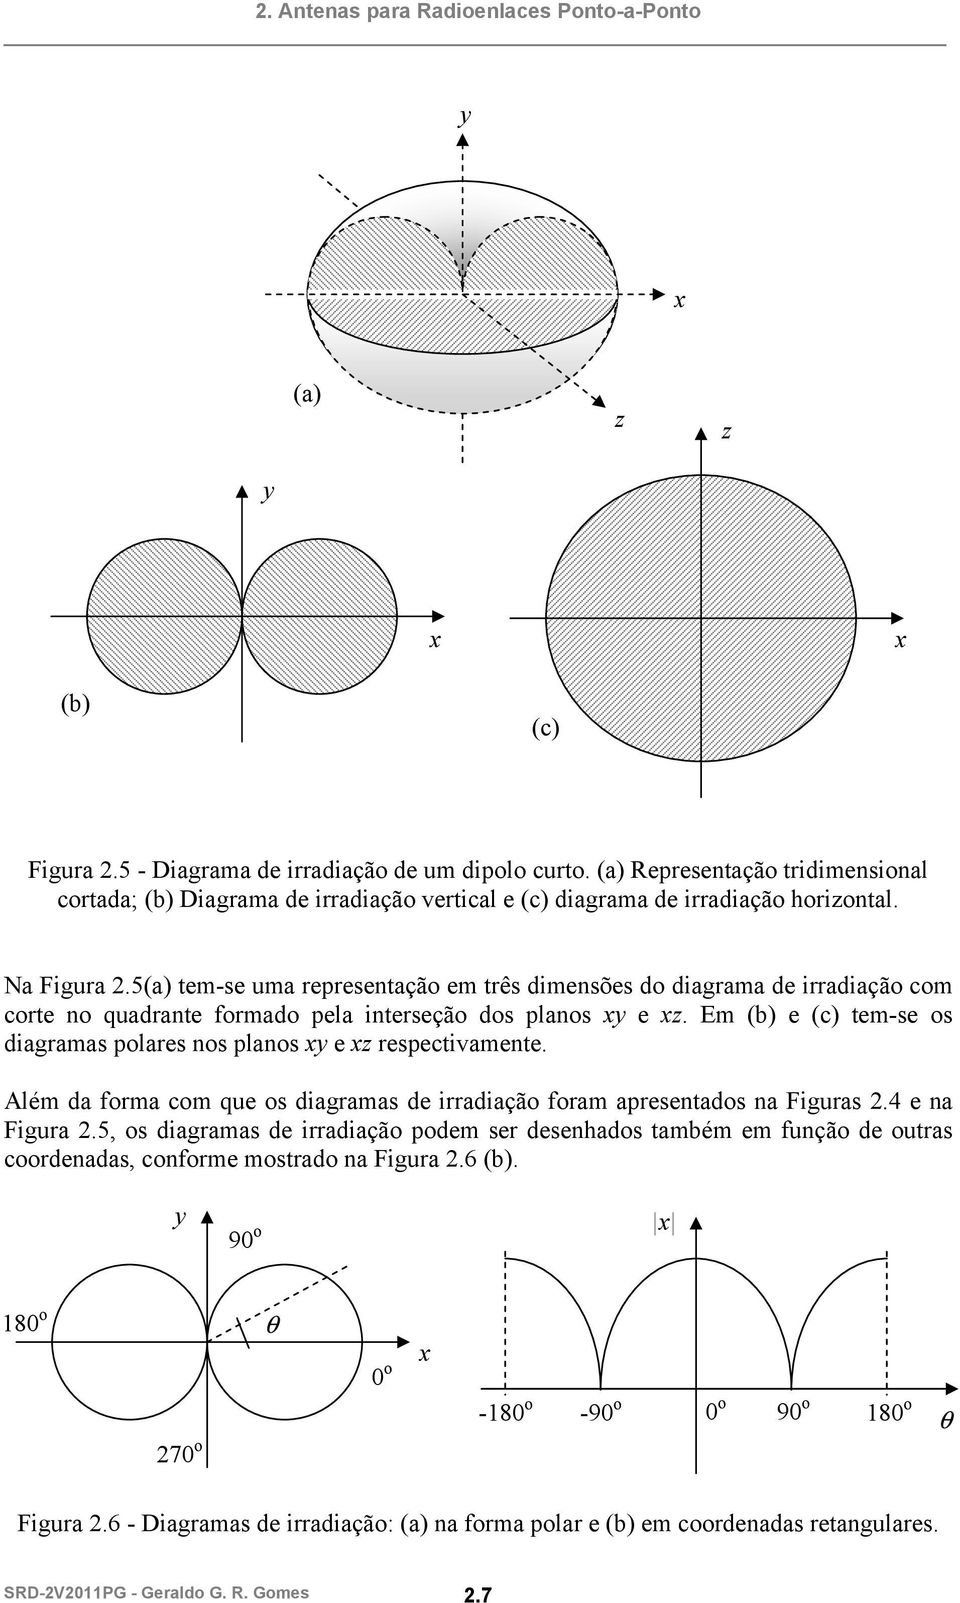 Em (b) e (c) tem-se os diagramas polares nos planos xy e xz respectivamente. Além da forma com que os diagramas de irradiação foram apresentados na Figuras 2.4 e na Figura 2.